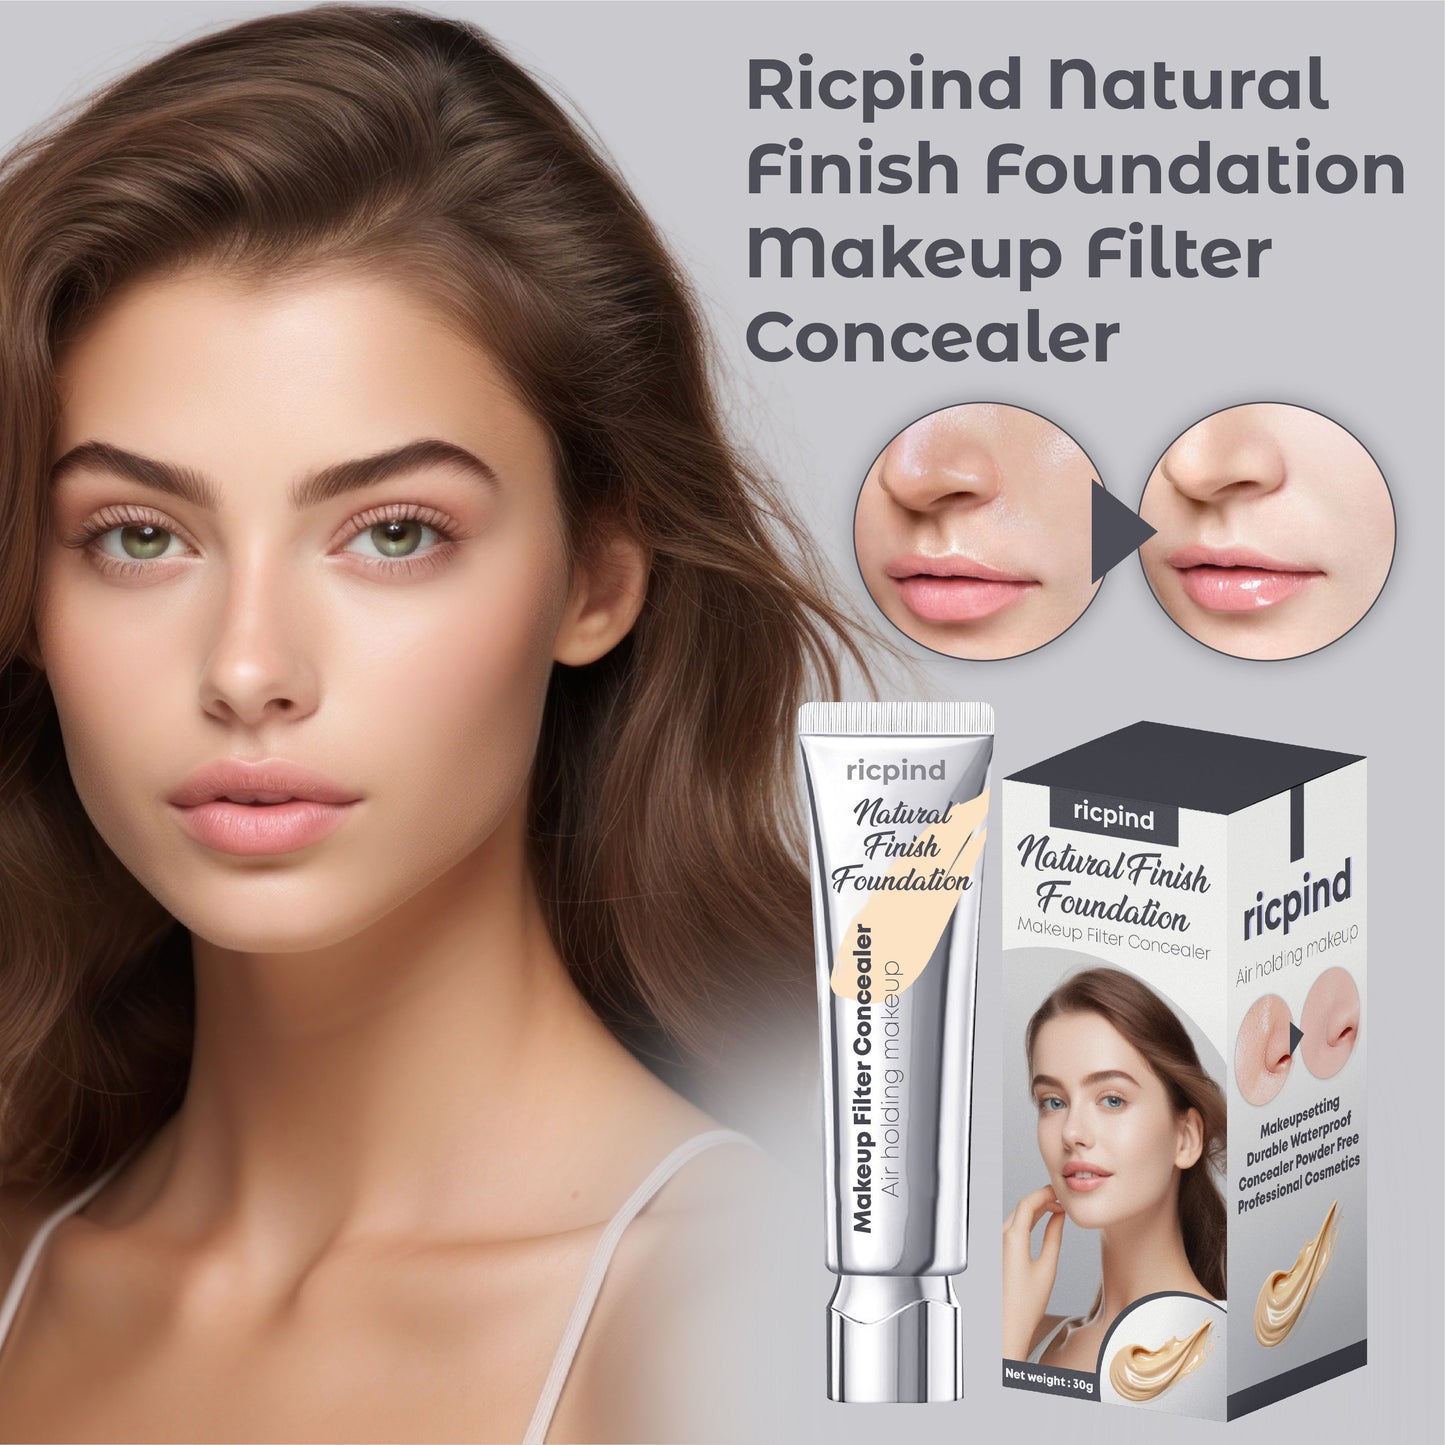 RICPIND 2 Natural Finish Foundation Makeup Filter Concealer